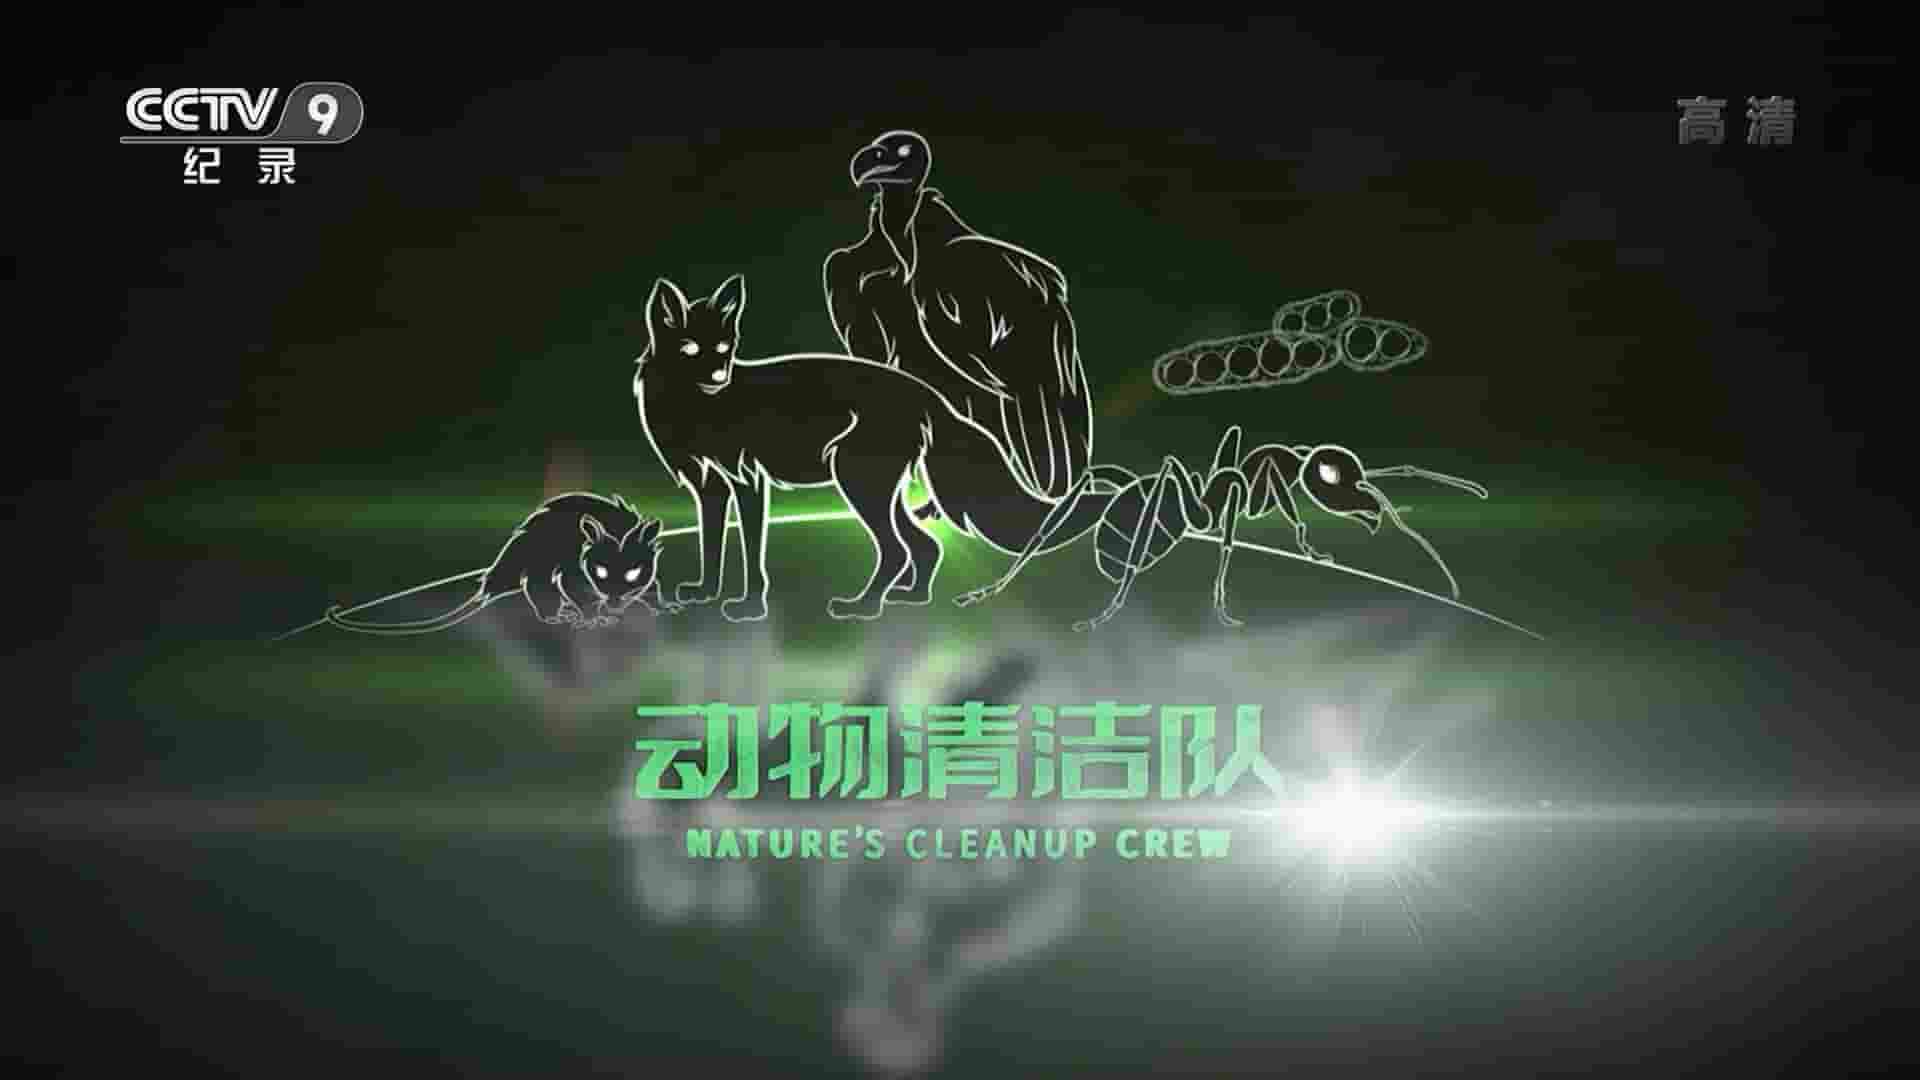 央视纪录片/CBC纪录片《动物清洁队 Nature’s Cleanup Crew 2021》全1集 国语中字 1080P高清网盘下载